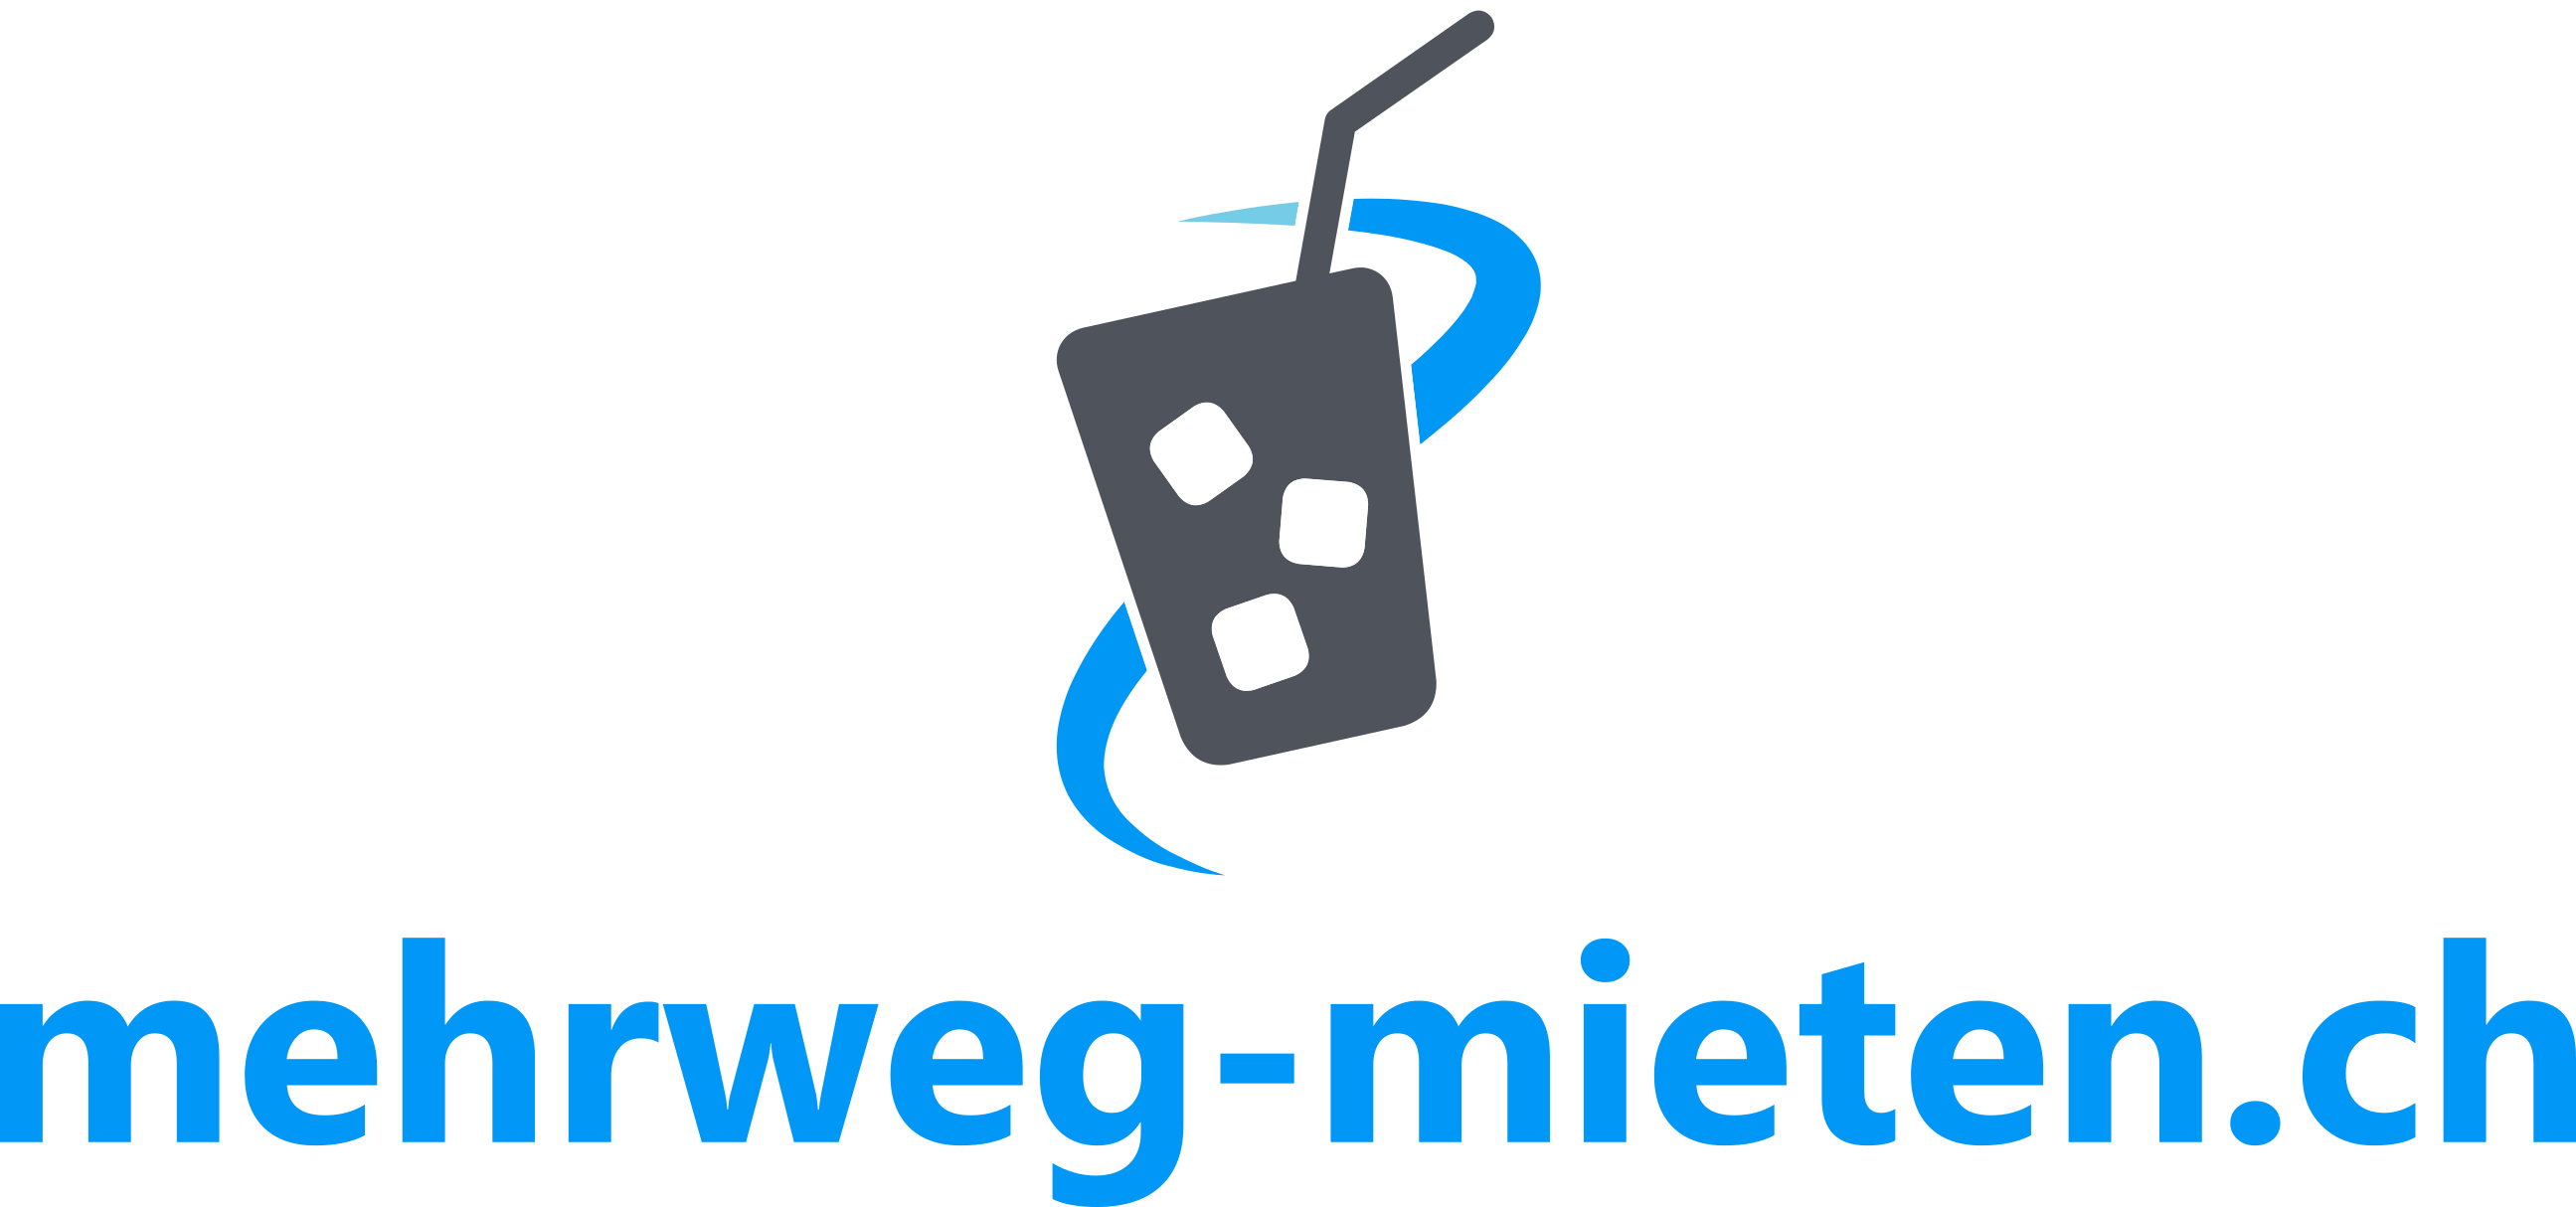 mehrweg-mieten.ch Logo